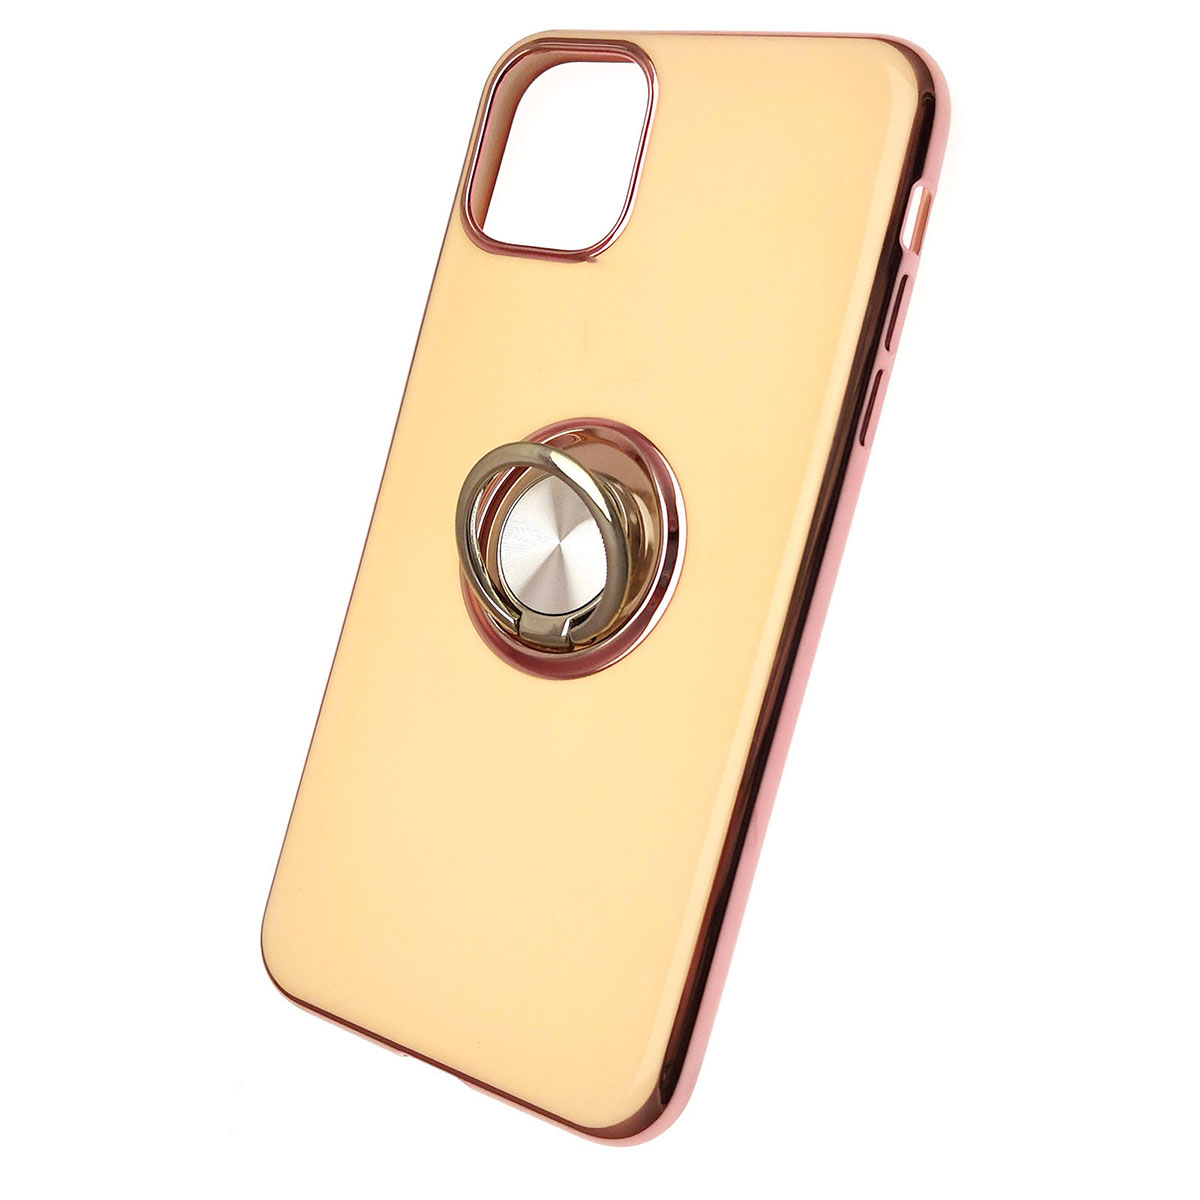 Чехол накладка для APPLE iPhone 11 Pro MAX, силикон, глянец, с лого, с кольцом, цвет молочный.